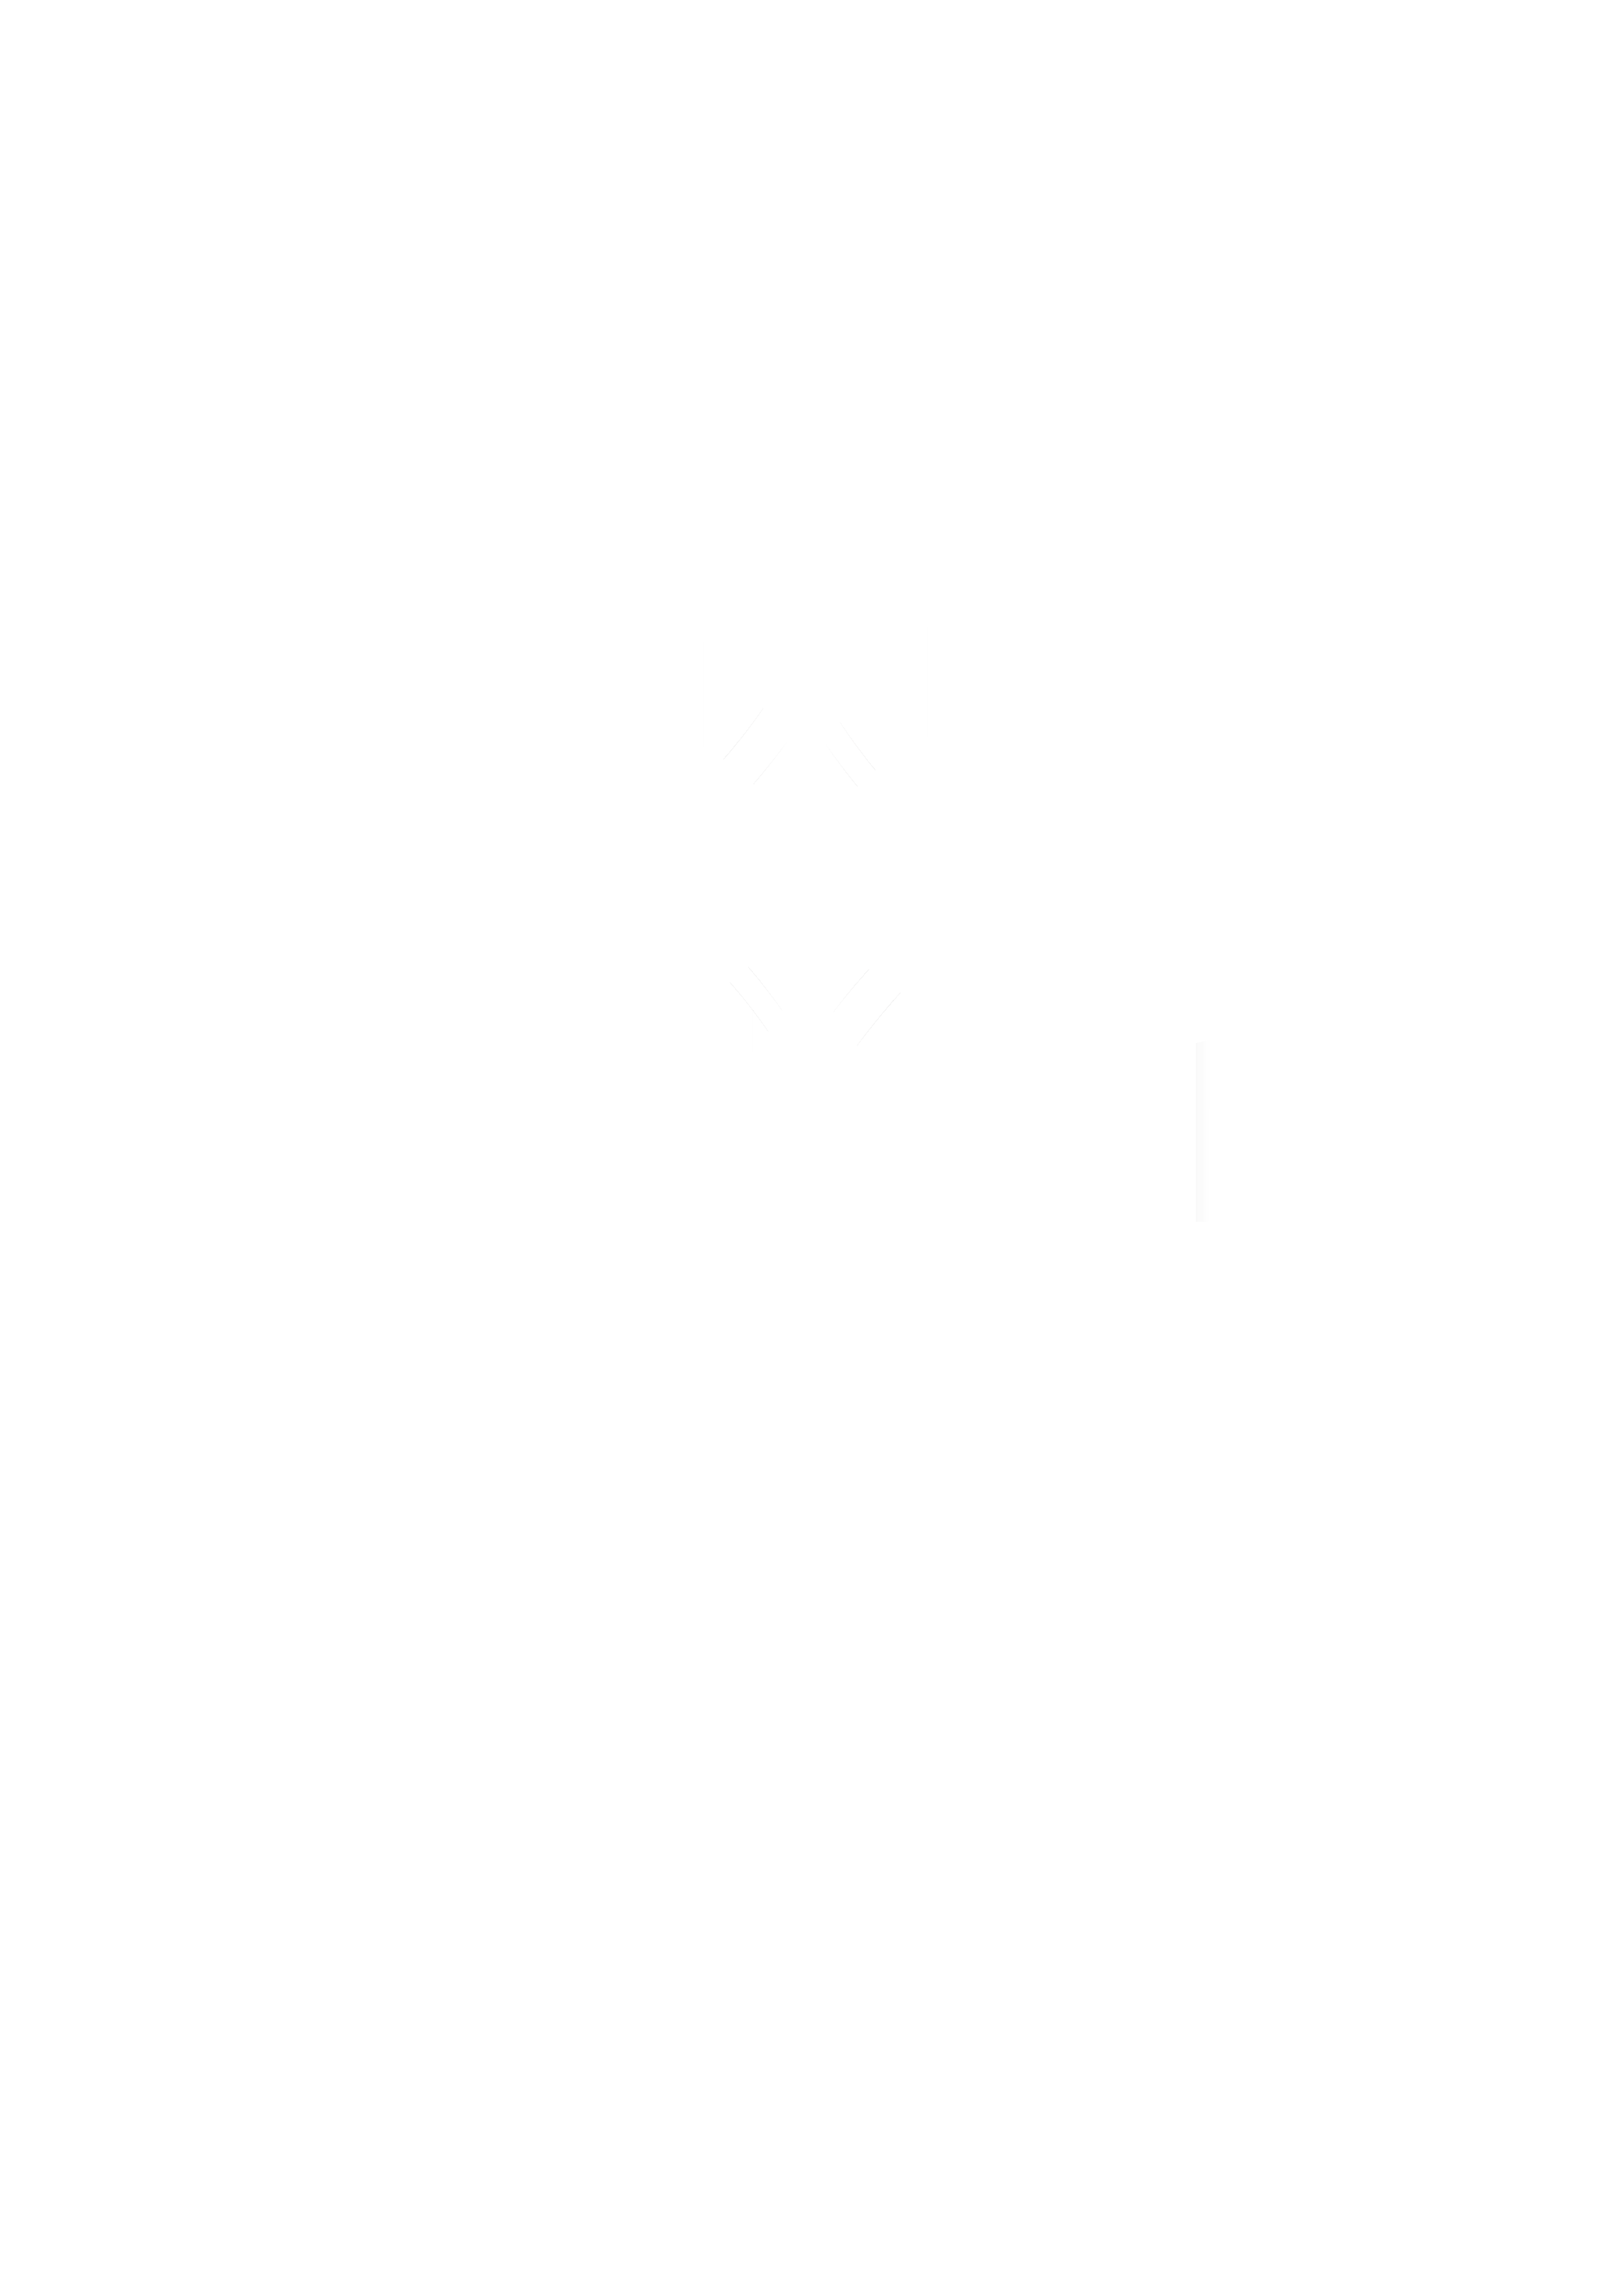 Queen’s Anniversary logo